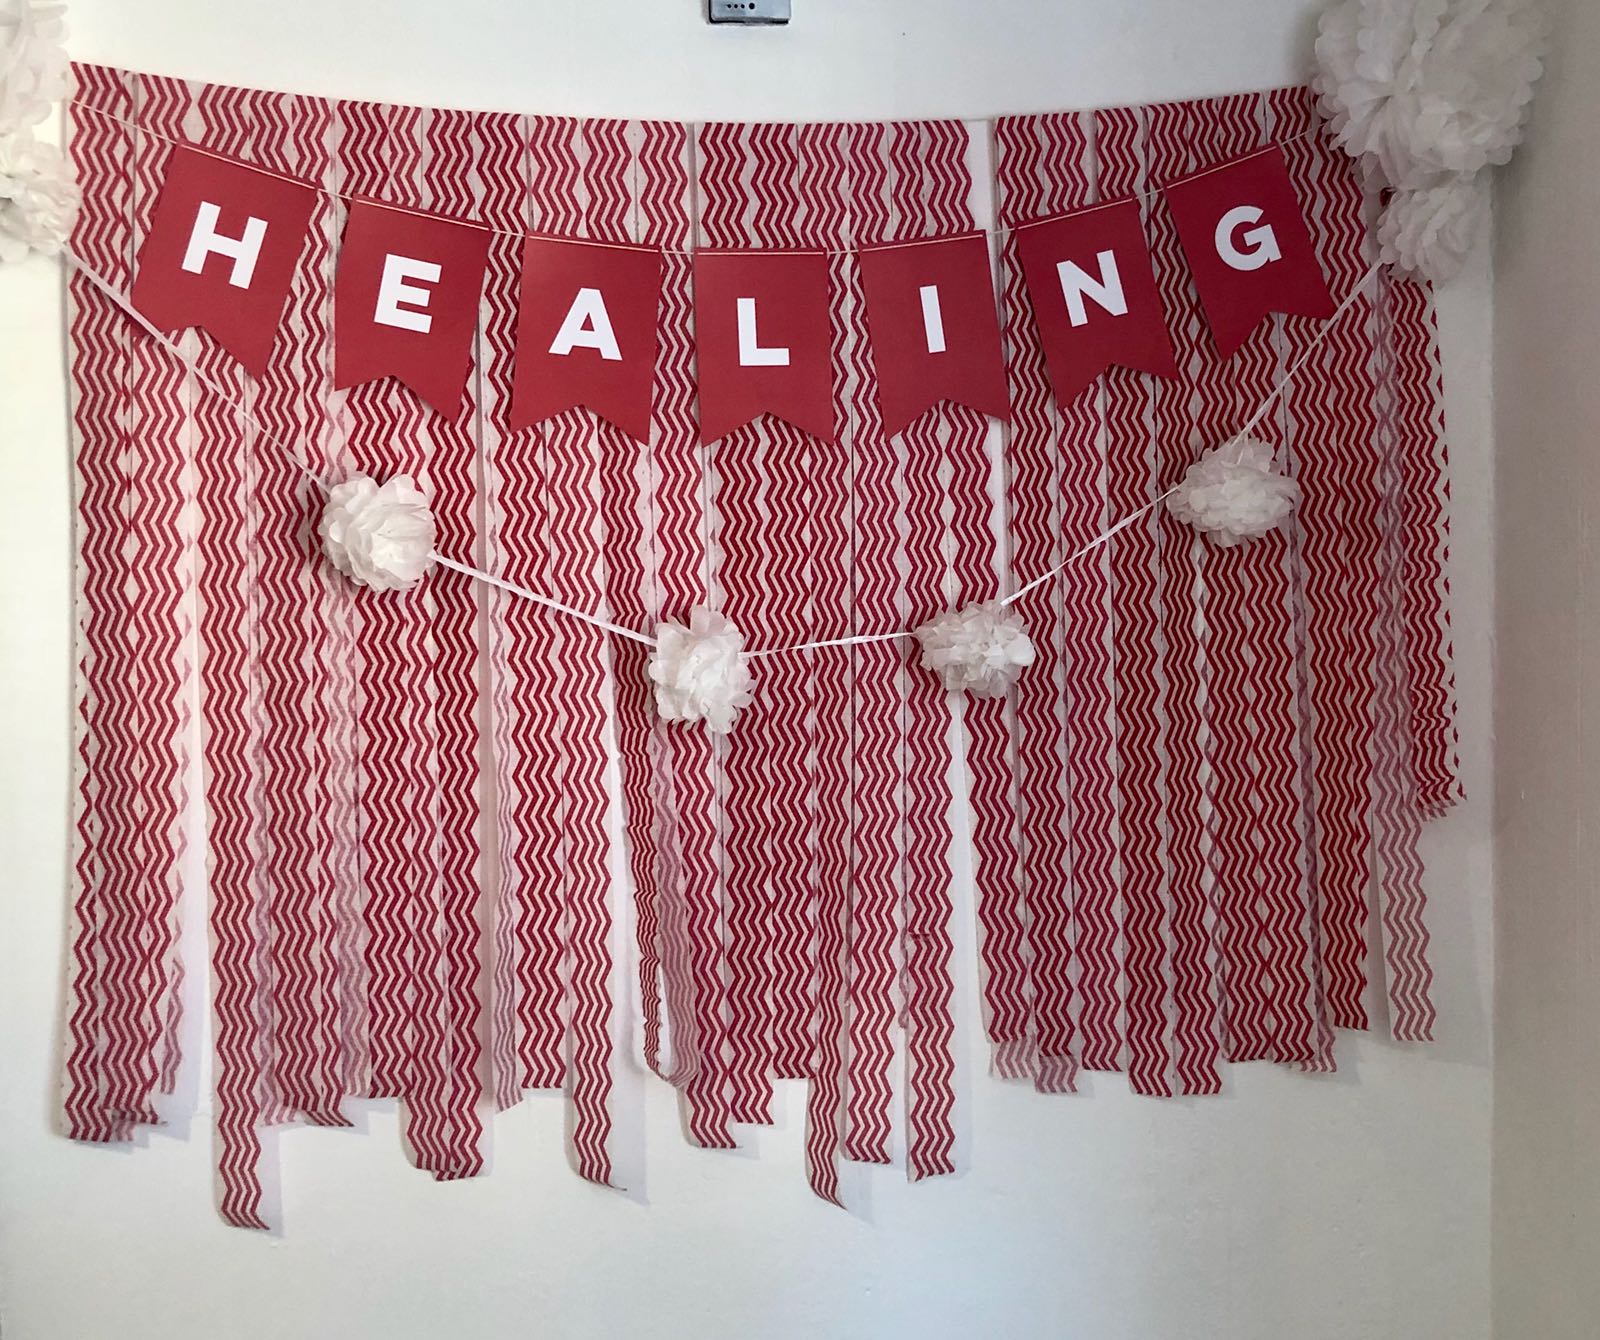 grand_opening_healing_banner.jpeg